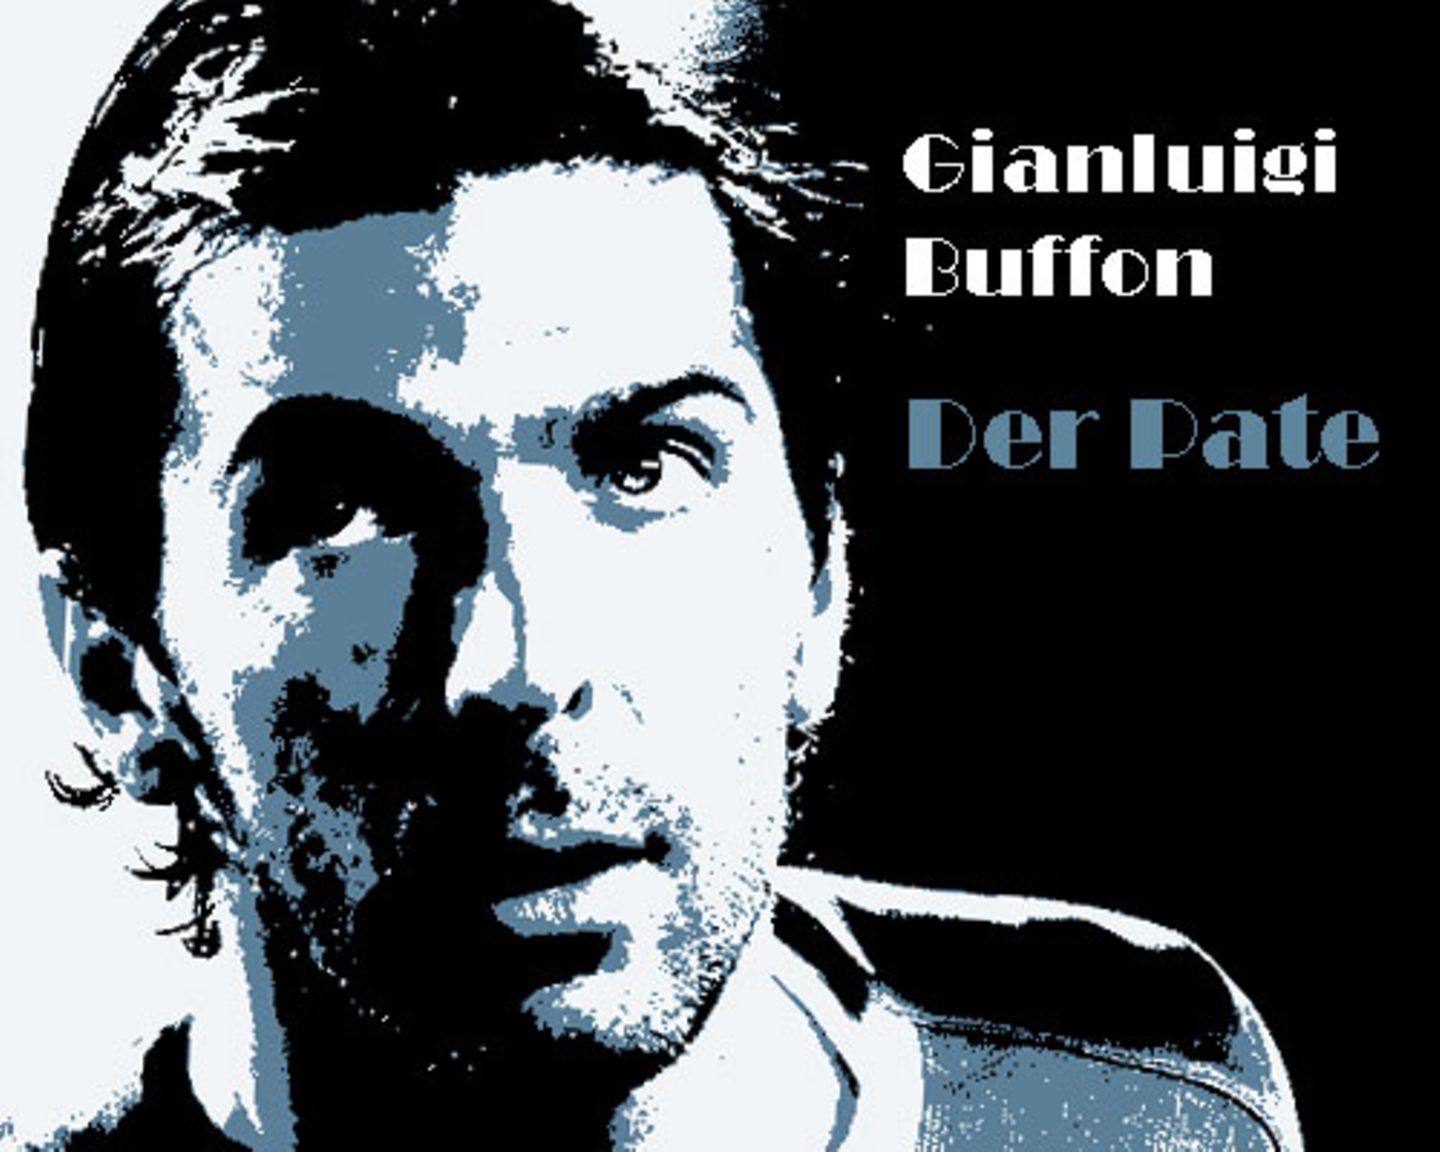 Gianluigi Buffon: Der Pate